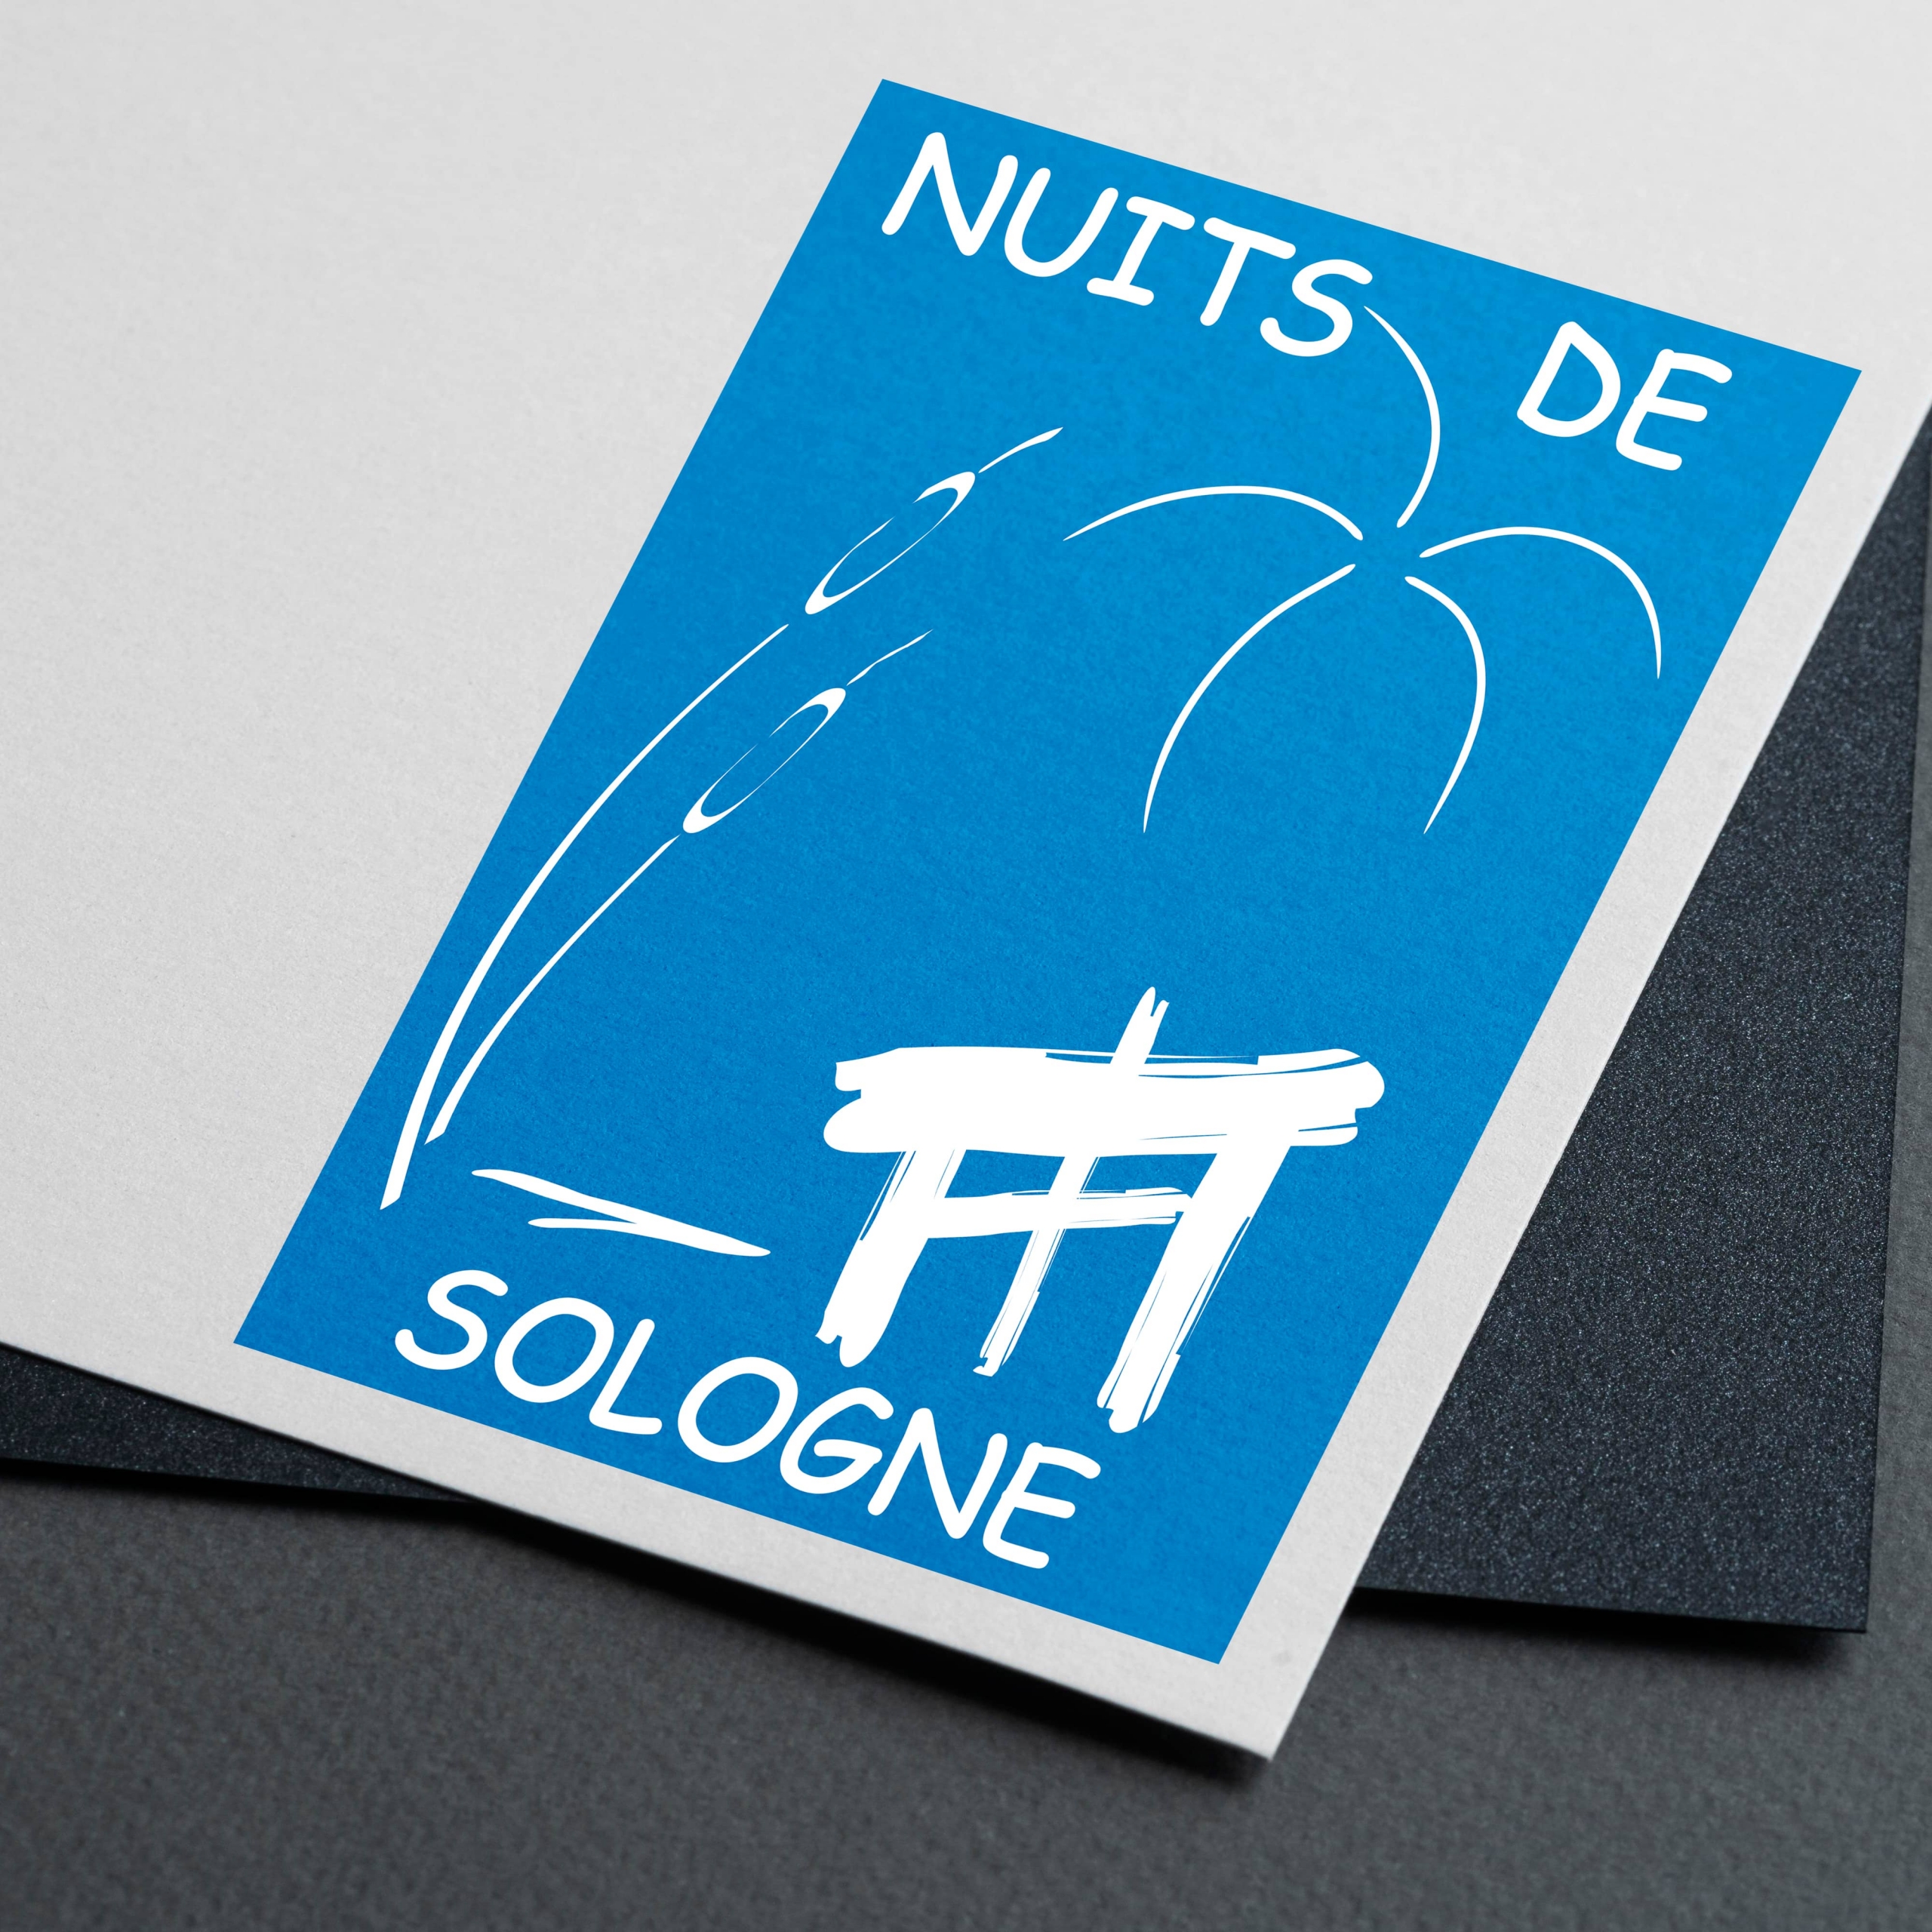 Logo Nuits de Sologne - RANA ENCENDIDA - Graphiste - Crépy-en-Valois - Oise